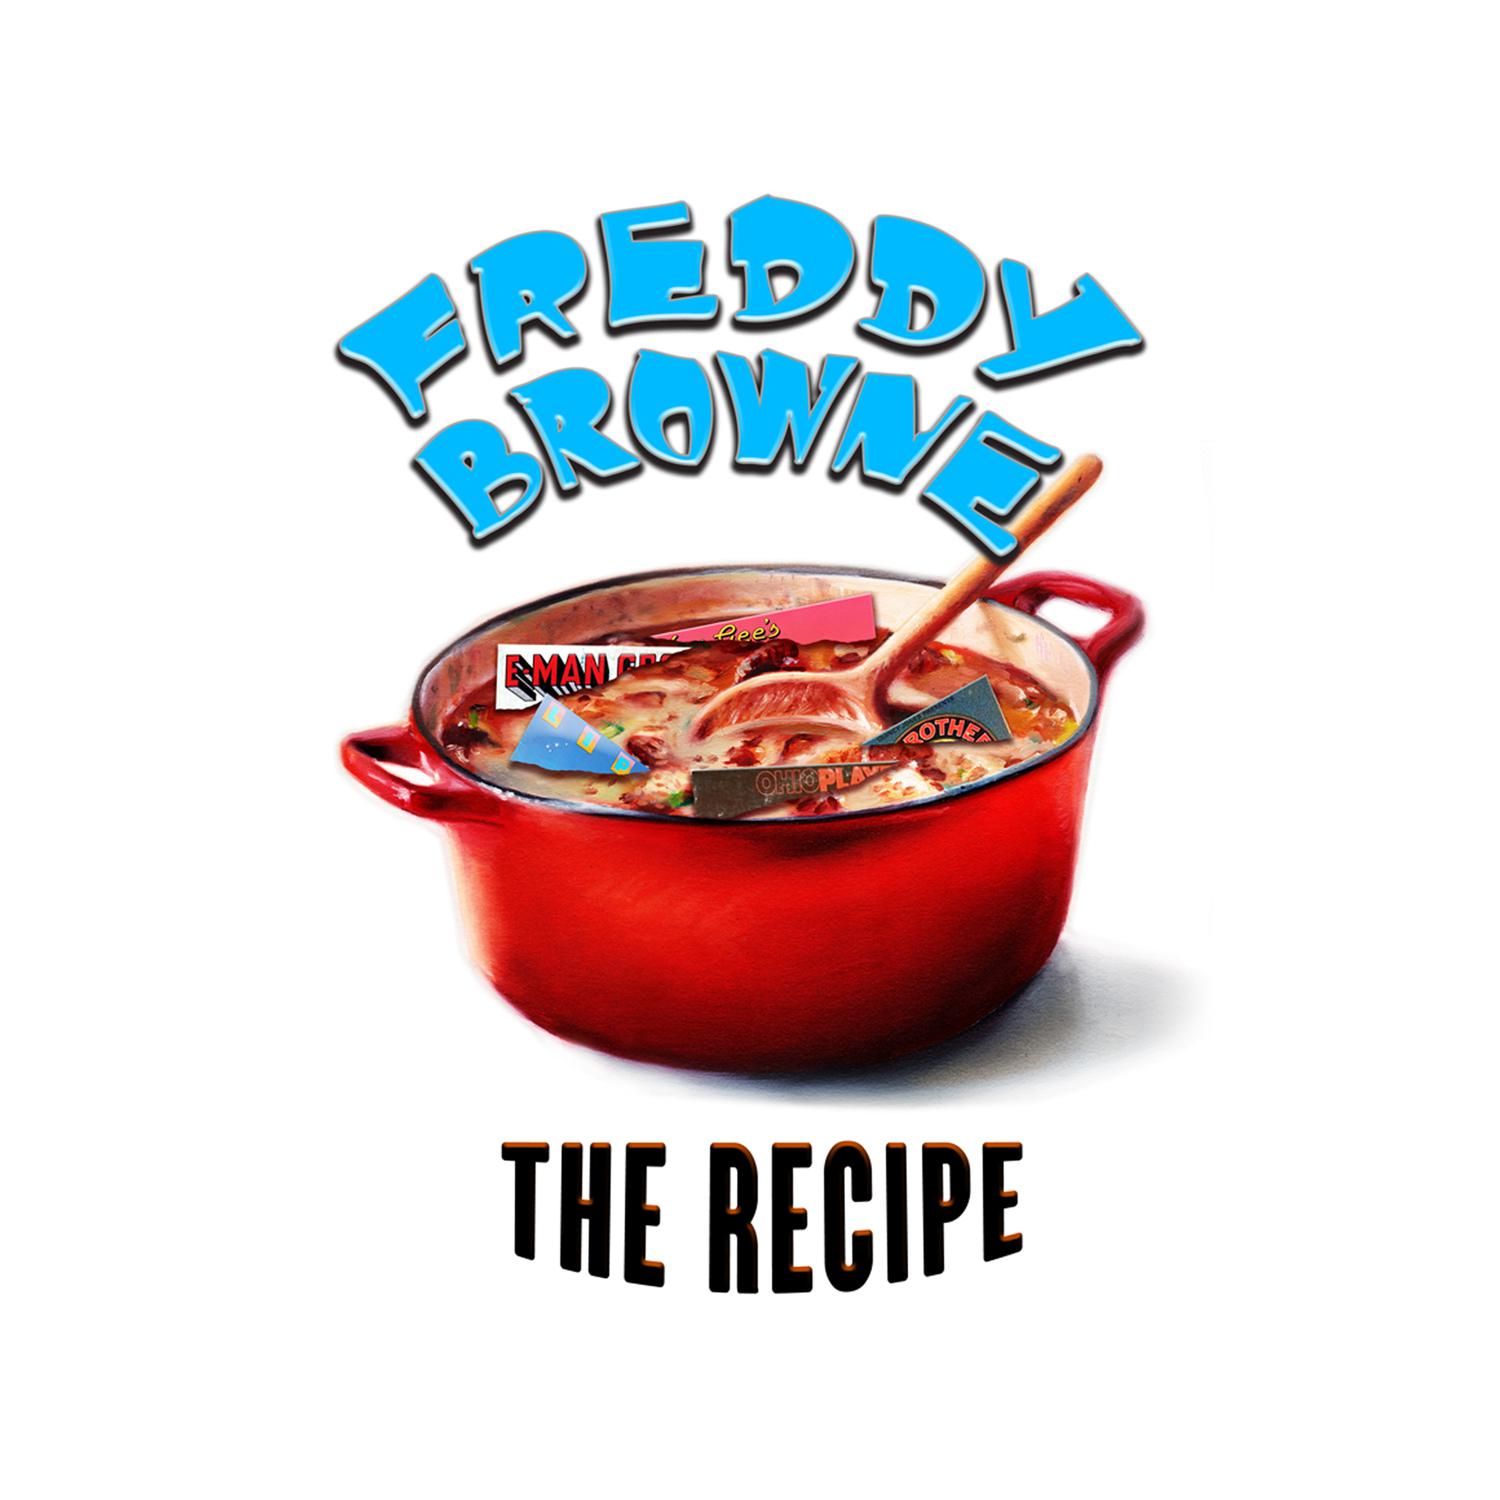 "The Recipe"